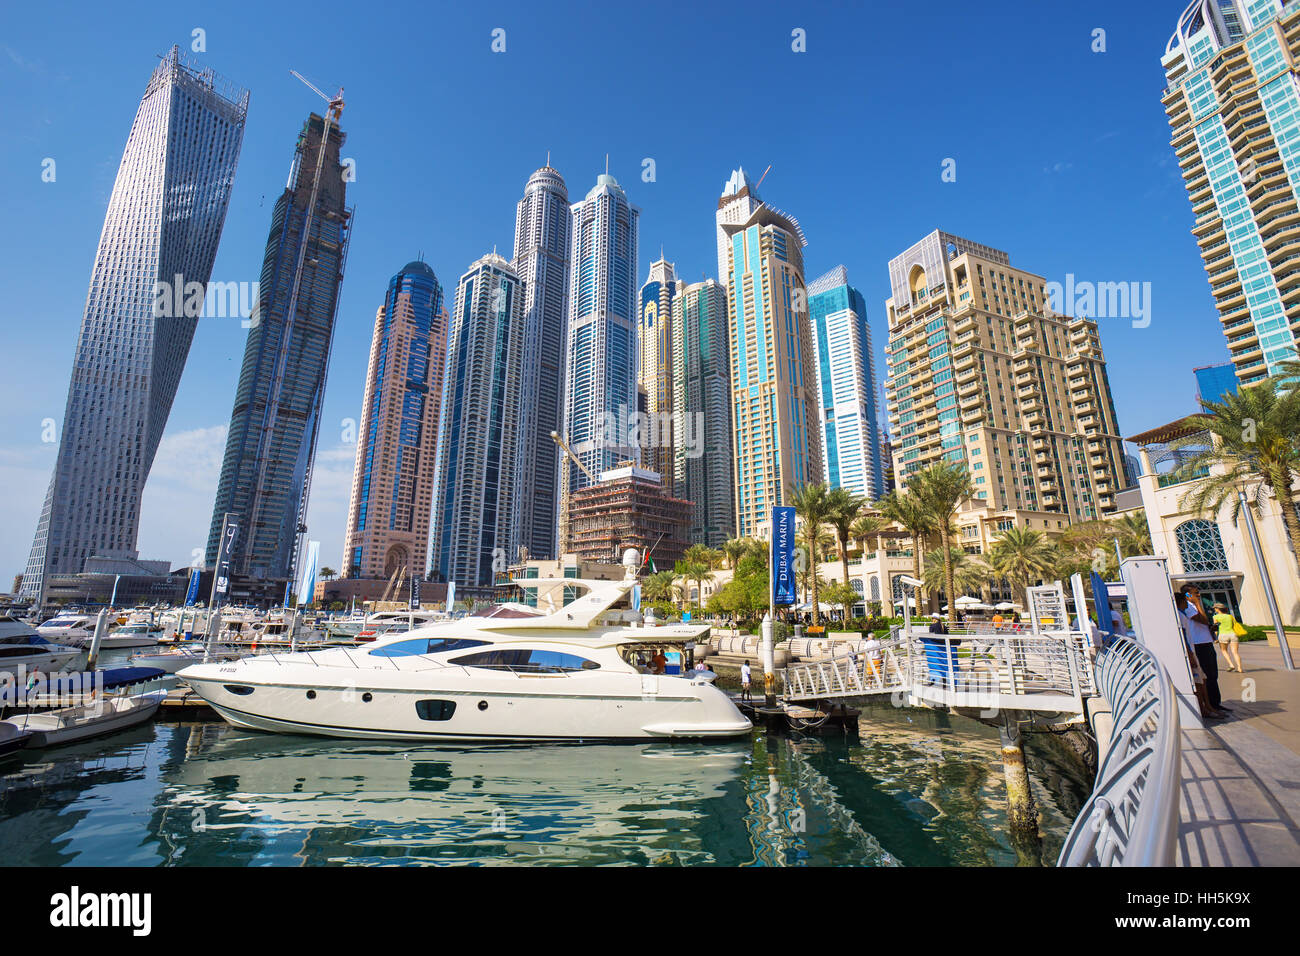 La marina de Dubaï, EMIRATS ARABES UNIS - mars 5, 2016 : vue sur la Marina de Dubaï avec bateaux et yachts de luxe de Dubaï, Emirats Arabes Unis Banque D'Images